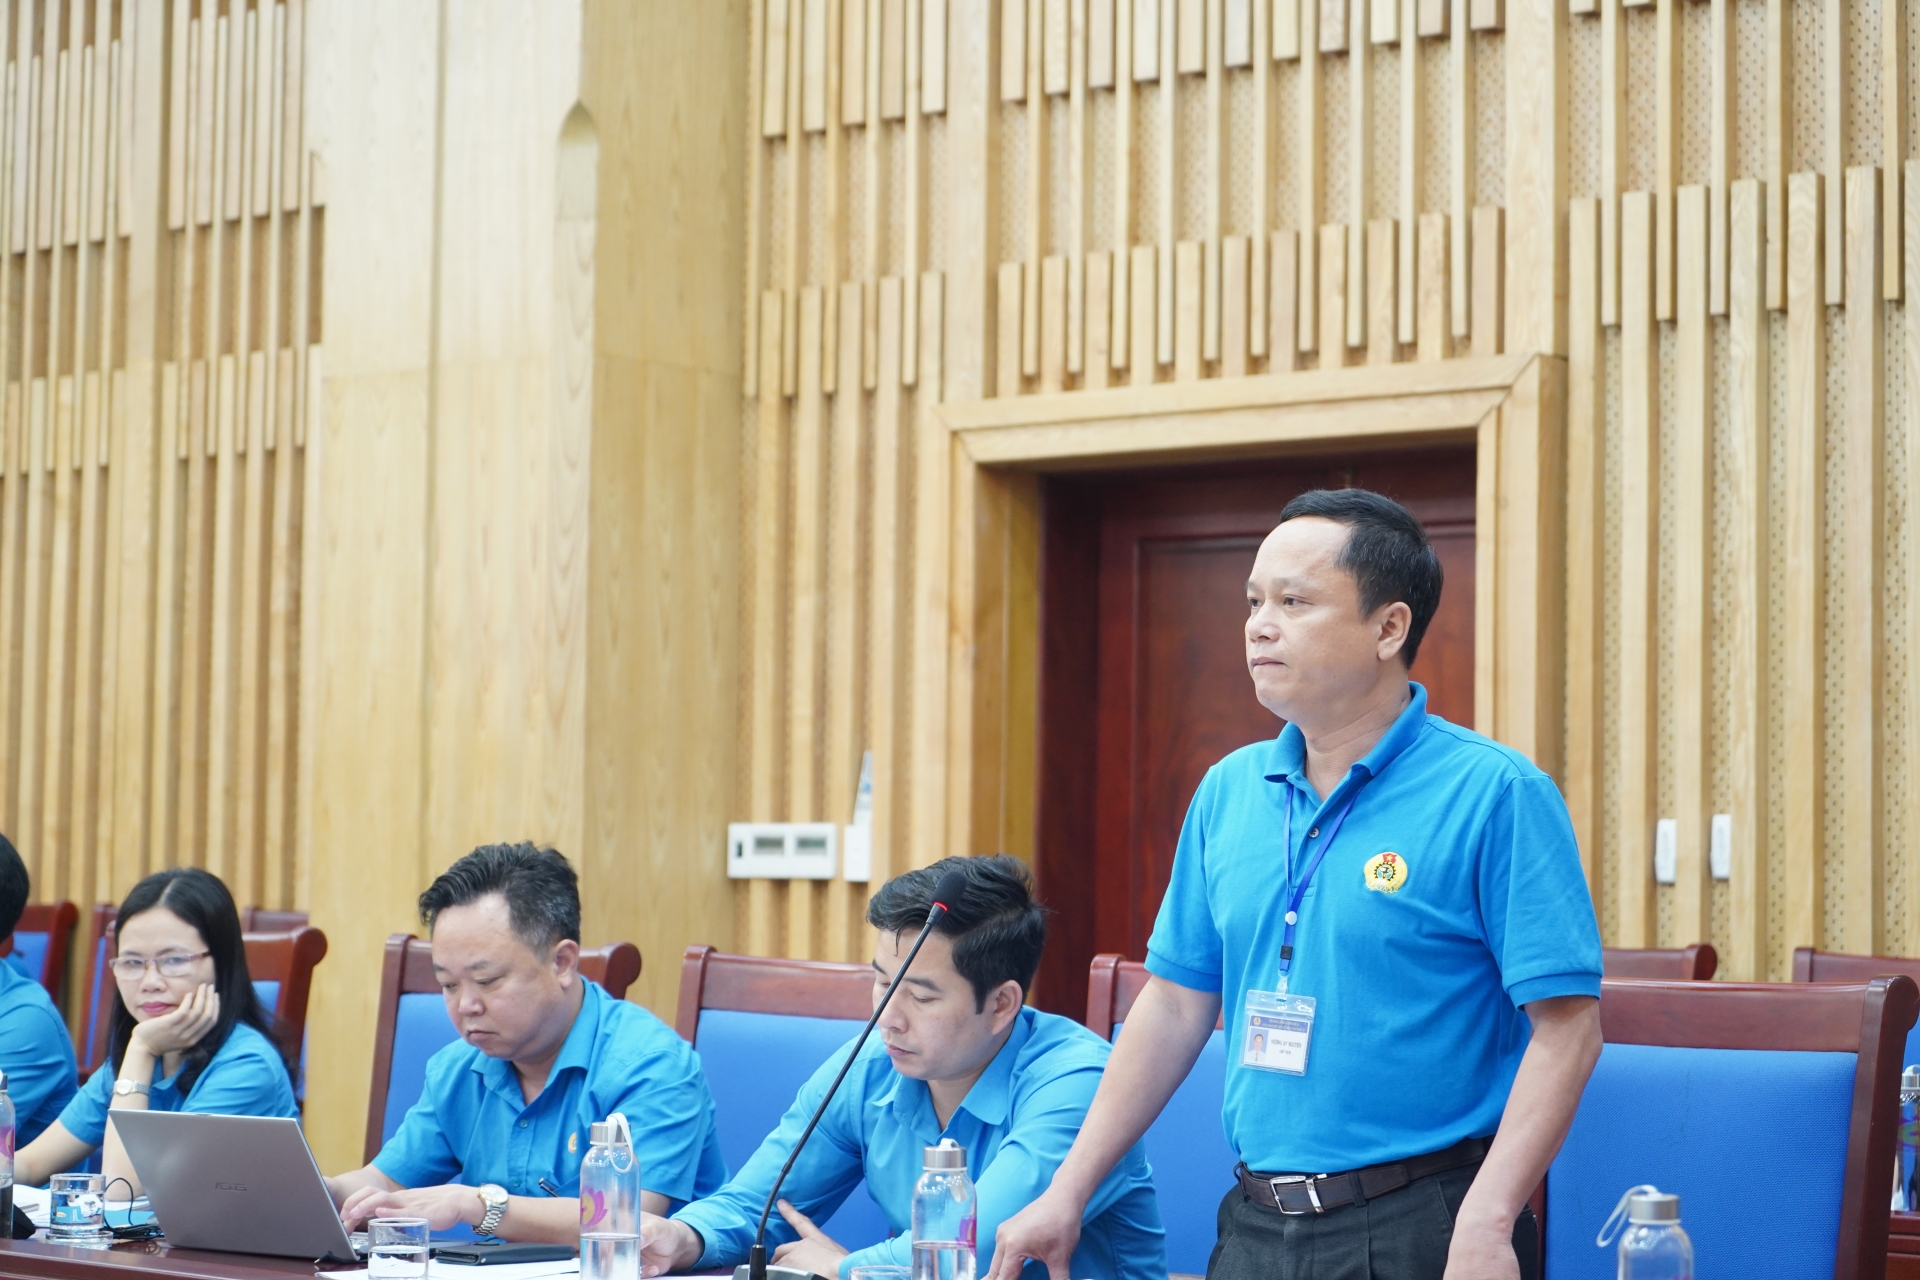 LĐLĐ tỉnh Nghệ An cảm ơn các ý kiến đóng góp rất trách nhiệm với tổ chức Công đoàn